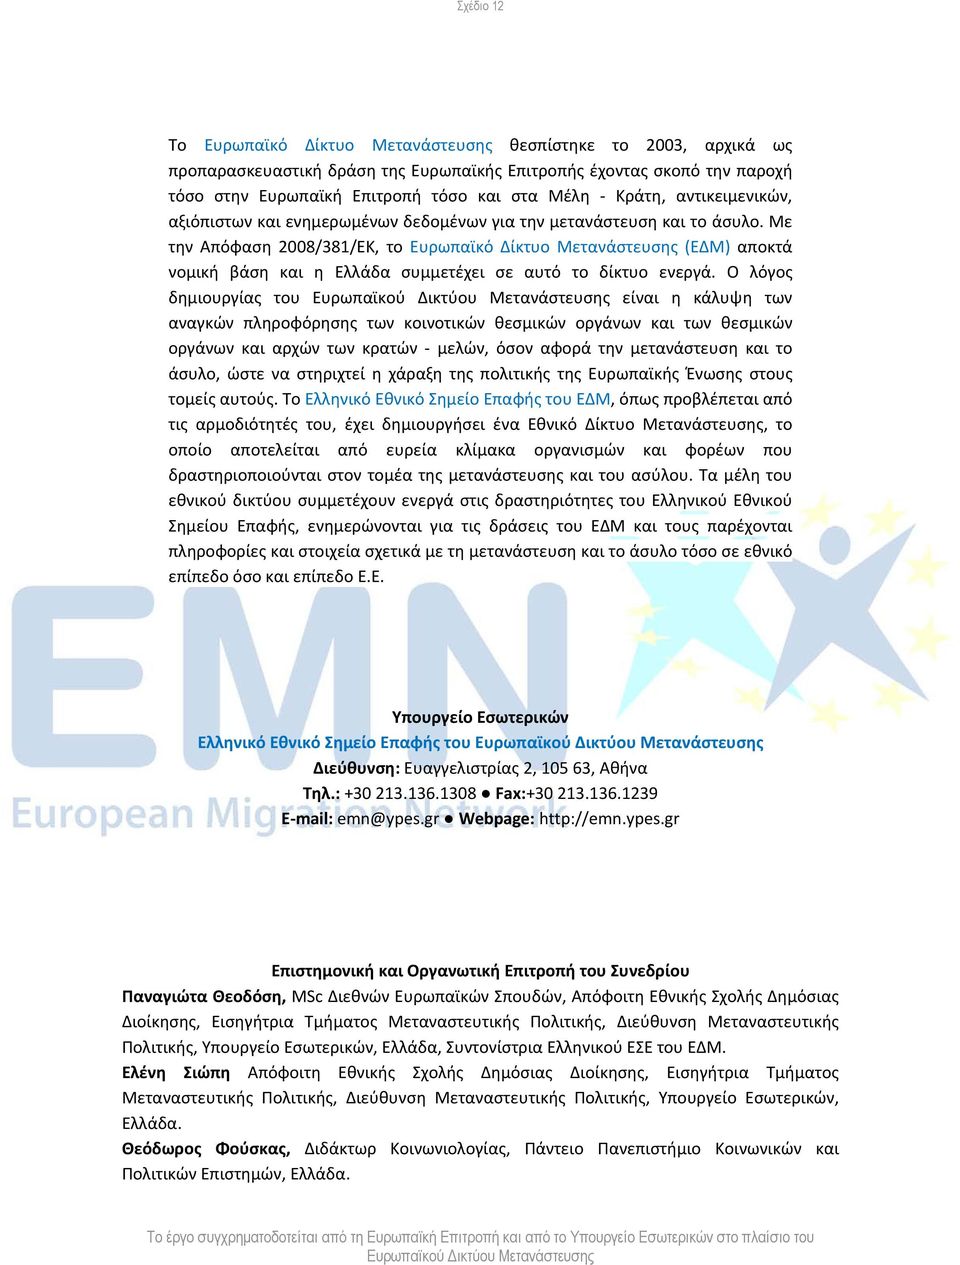 Με την Απόφαση 2008/381/ΕΚ, το Ευρωπαϊκό Δίκτυο Μετανάστευσης (ΕΔΜ) αποκτά νομική βάση και η Ελλάδα συμμετέχει σε αυτό το δίκτυο ενεργά.